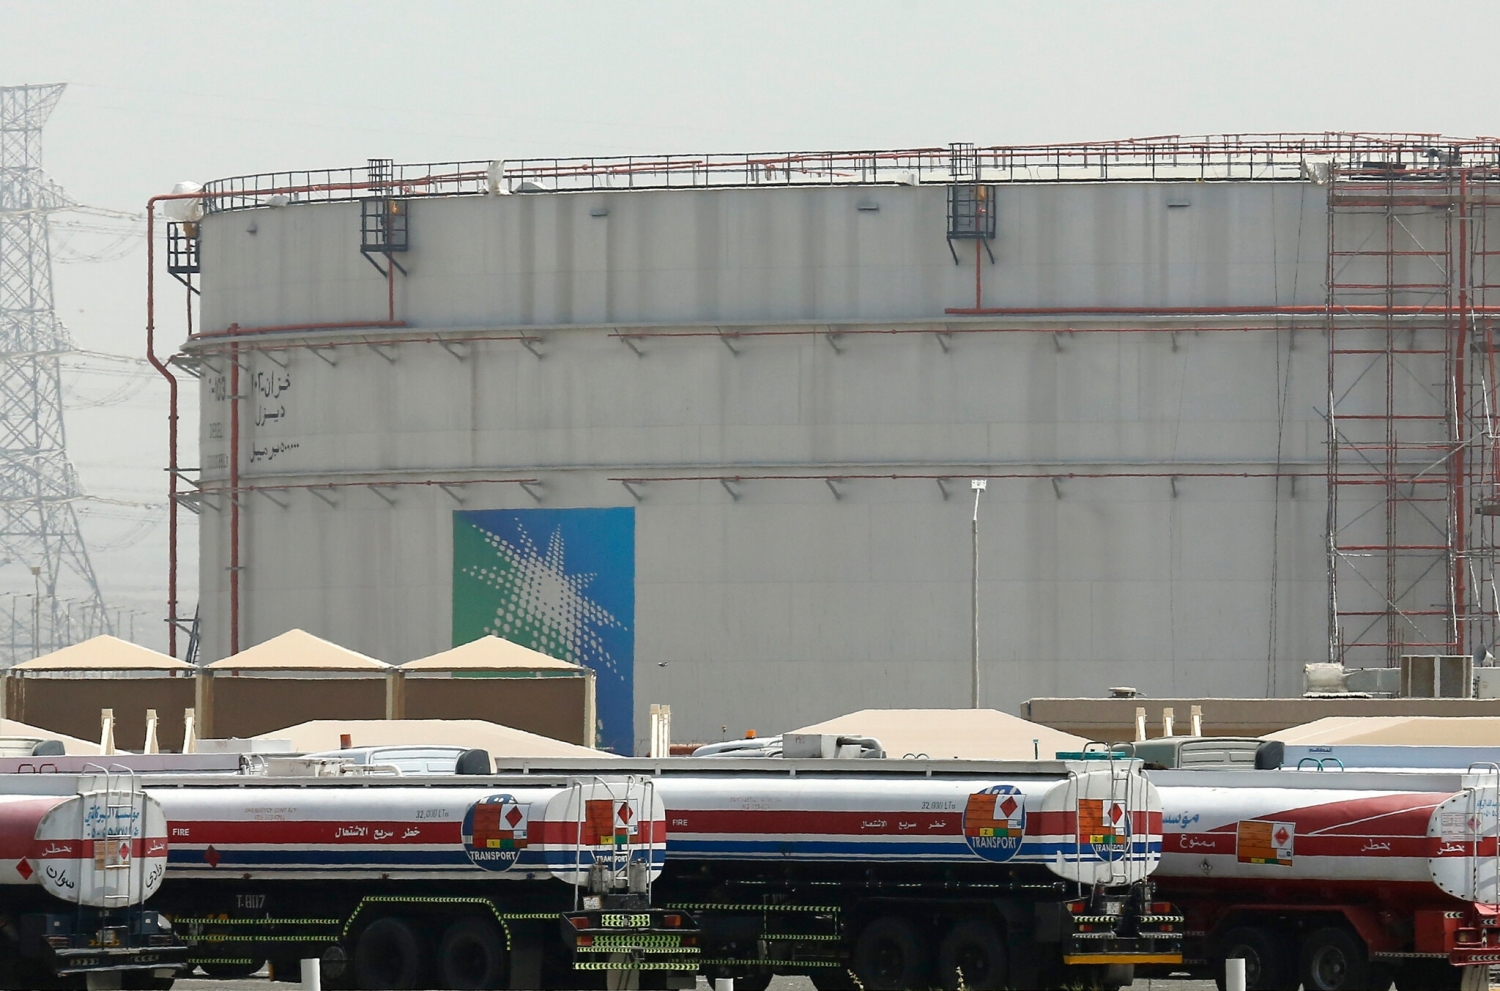 Sau thỏa thuận OPEC+: Tranh chấp giữa Ả-rập Xê-út và UAE vẫn chưa kết thúc